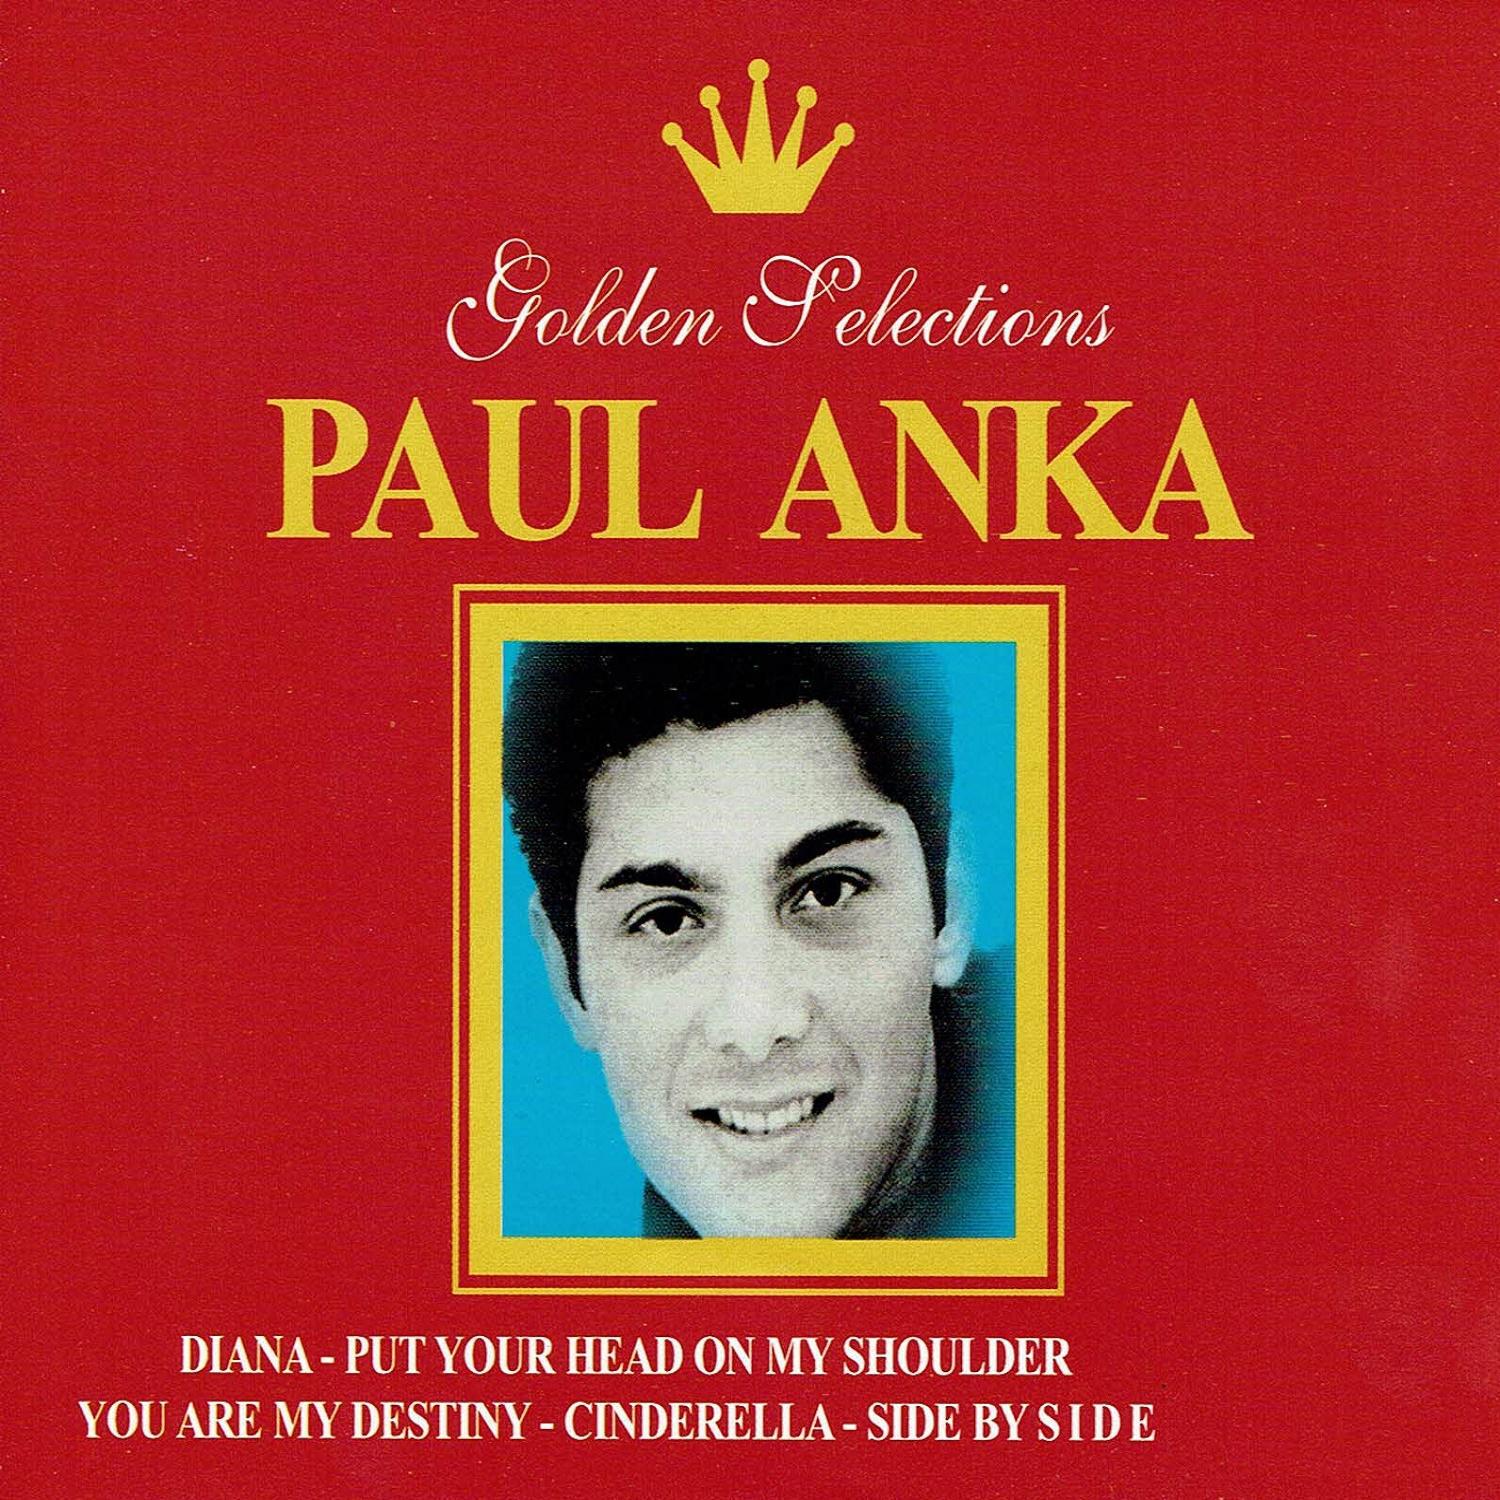 Paul Anka